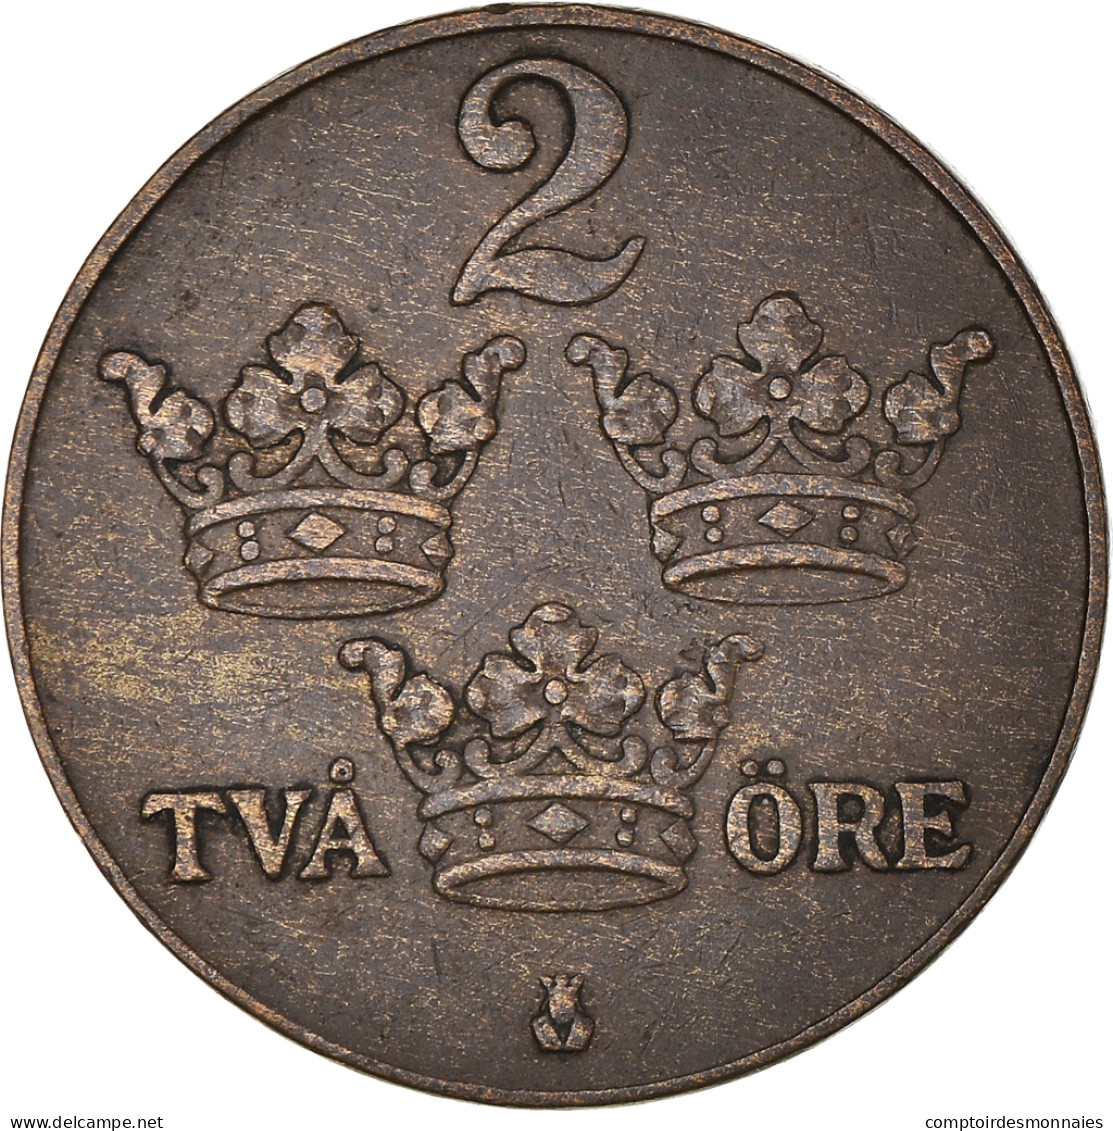 Monnaie, Suède, Gustaf V, 2 Öre, 1938, TTB+, Bronze, KM:778 - Suède